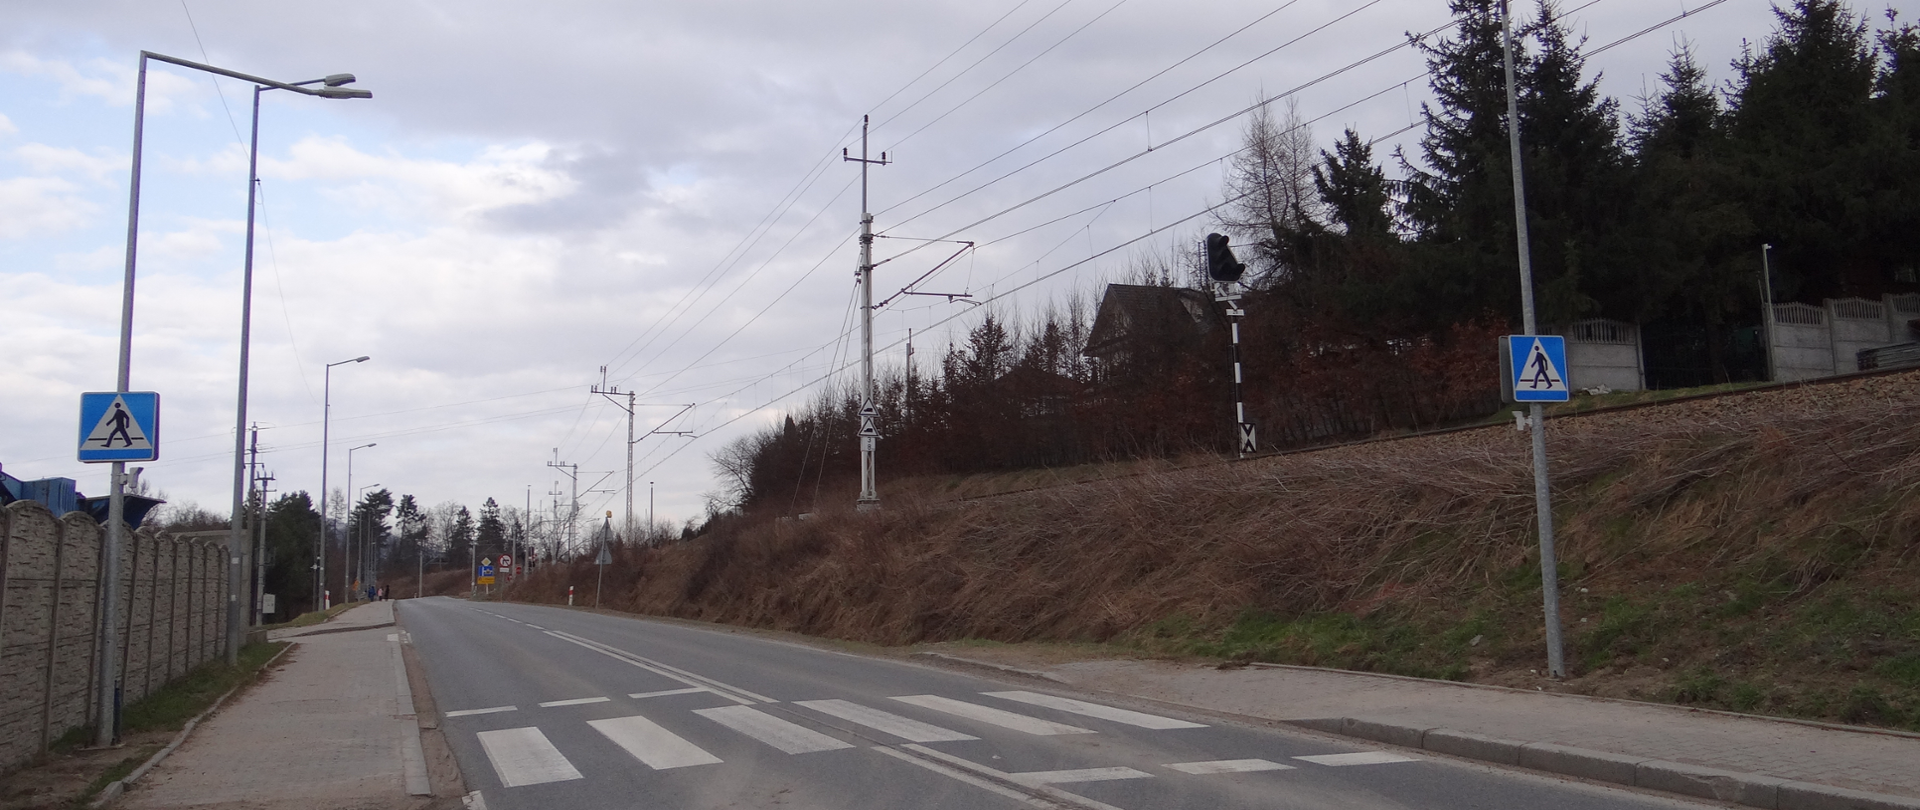 Doświetlenie na przejściu dla pieszych w Rokicinach Podhalańskich w km 3+154 odcinak 010 drogi
wojewódzkiej nr 958.